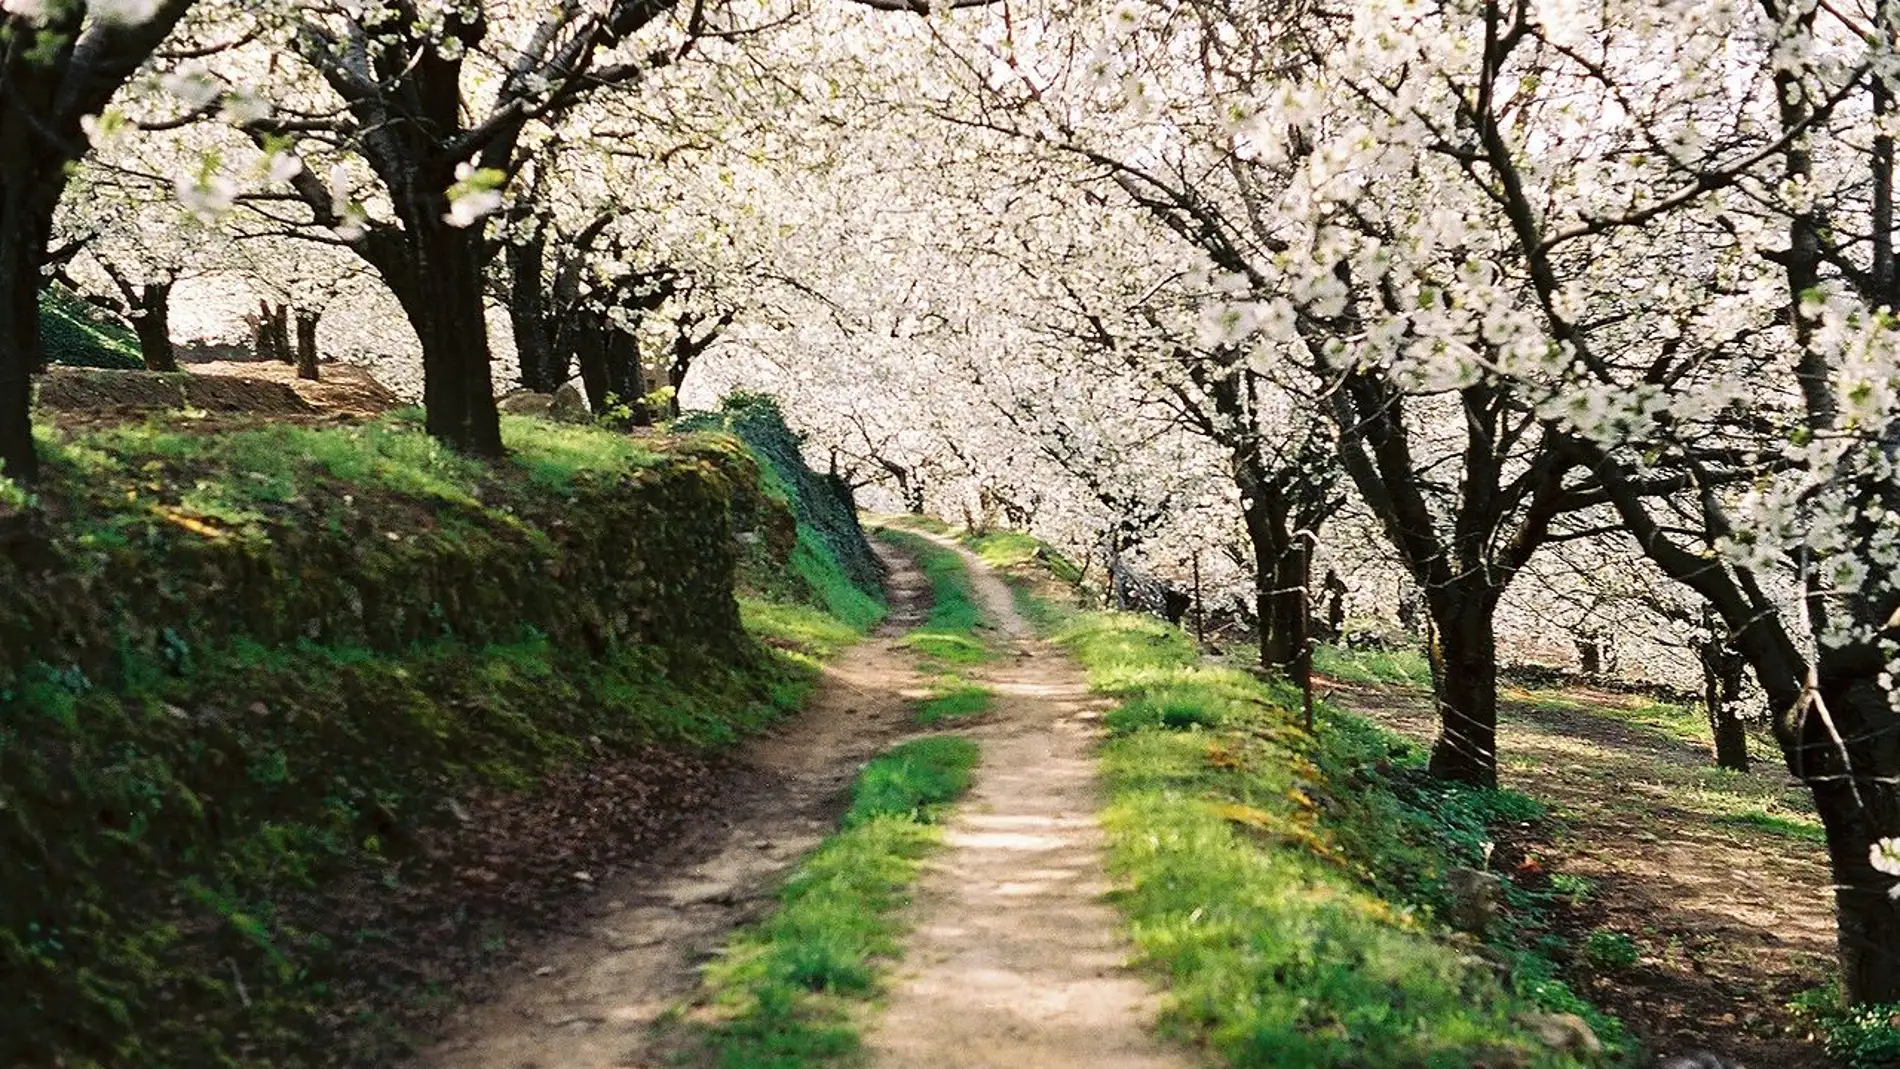 Valle del Jerte: esta es la curiosa leyenda que tiene una estrecha relación con los cerezos en flor